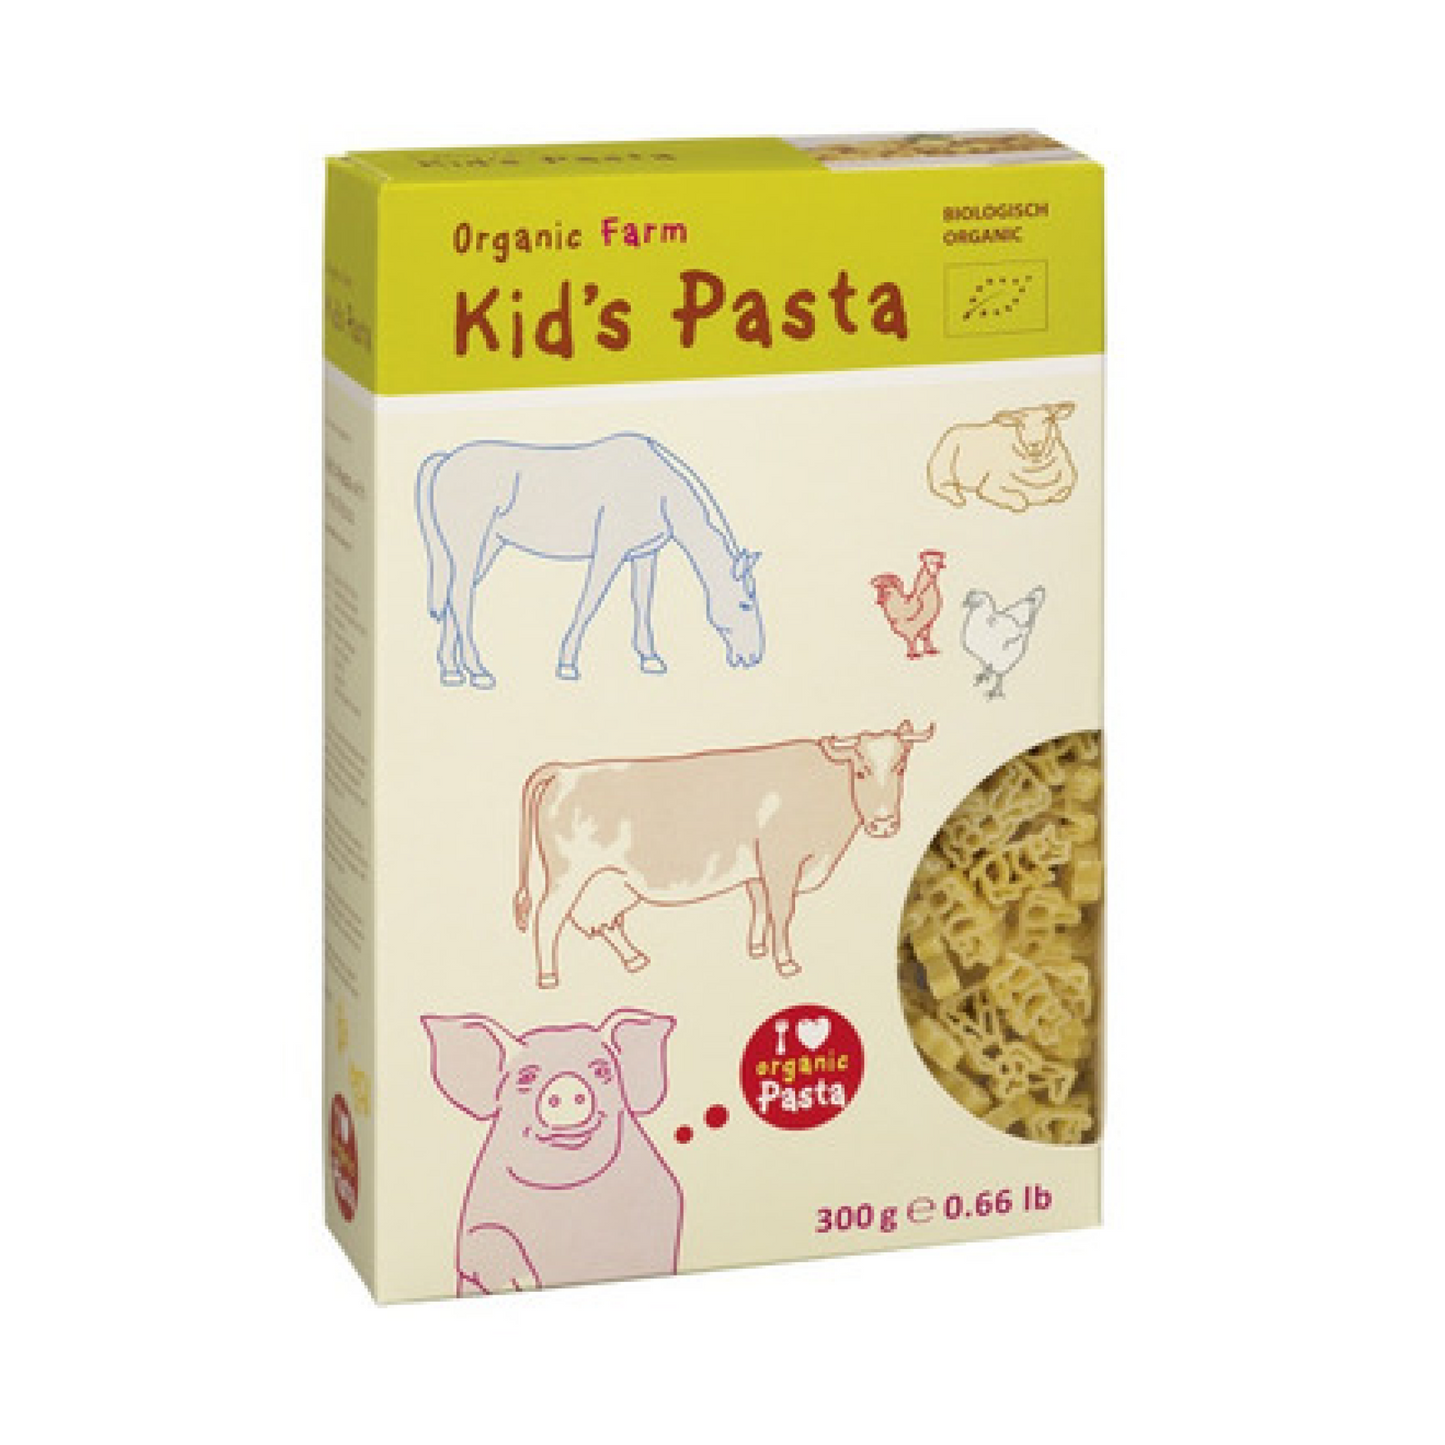 ALB Gold Kid's Pasta Organic Farm 300g